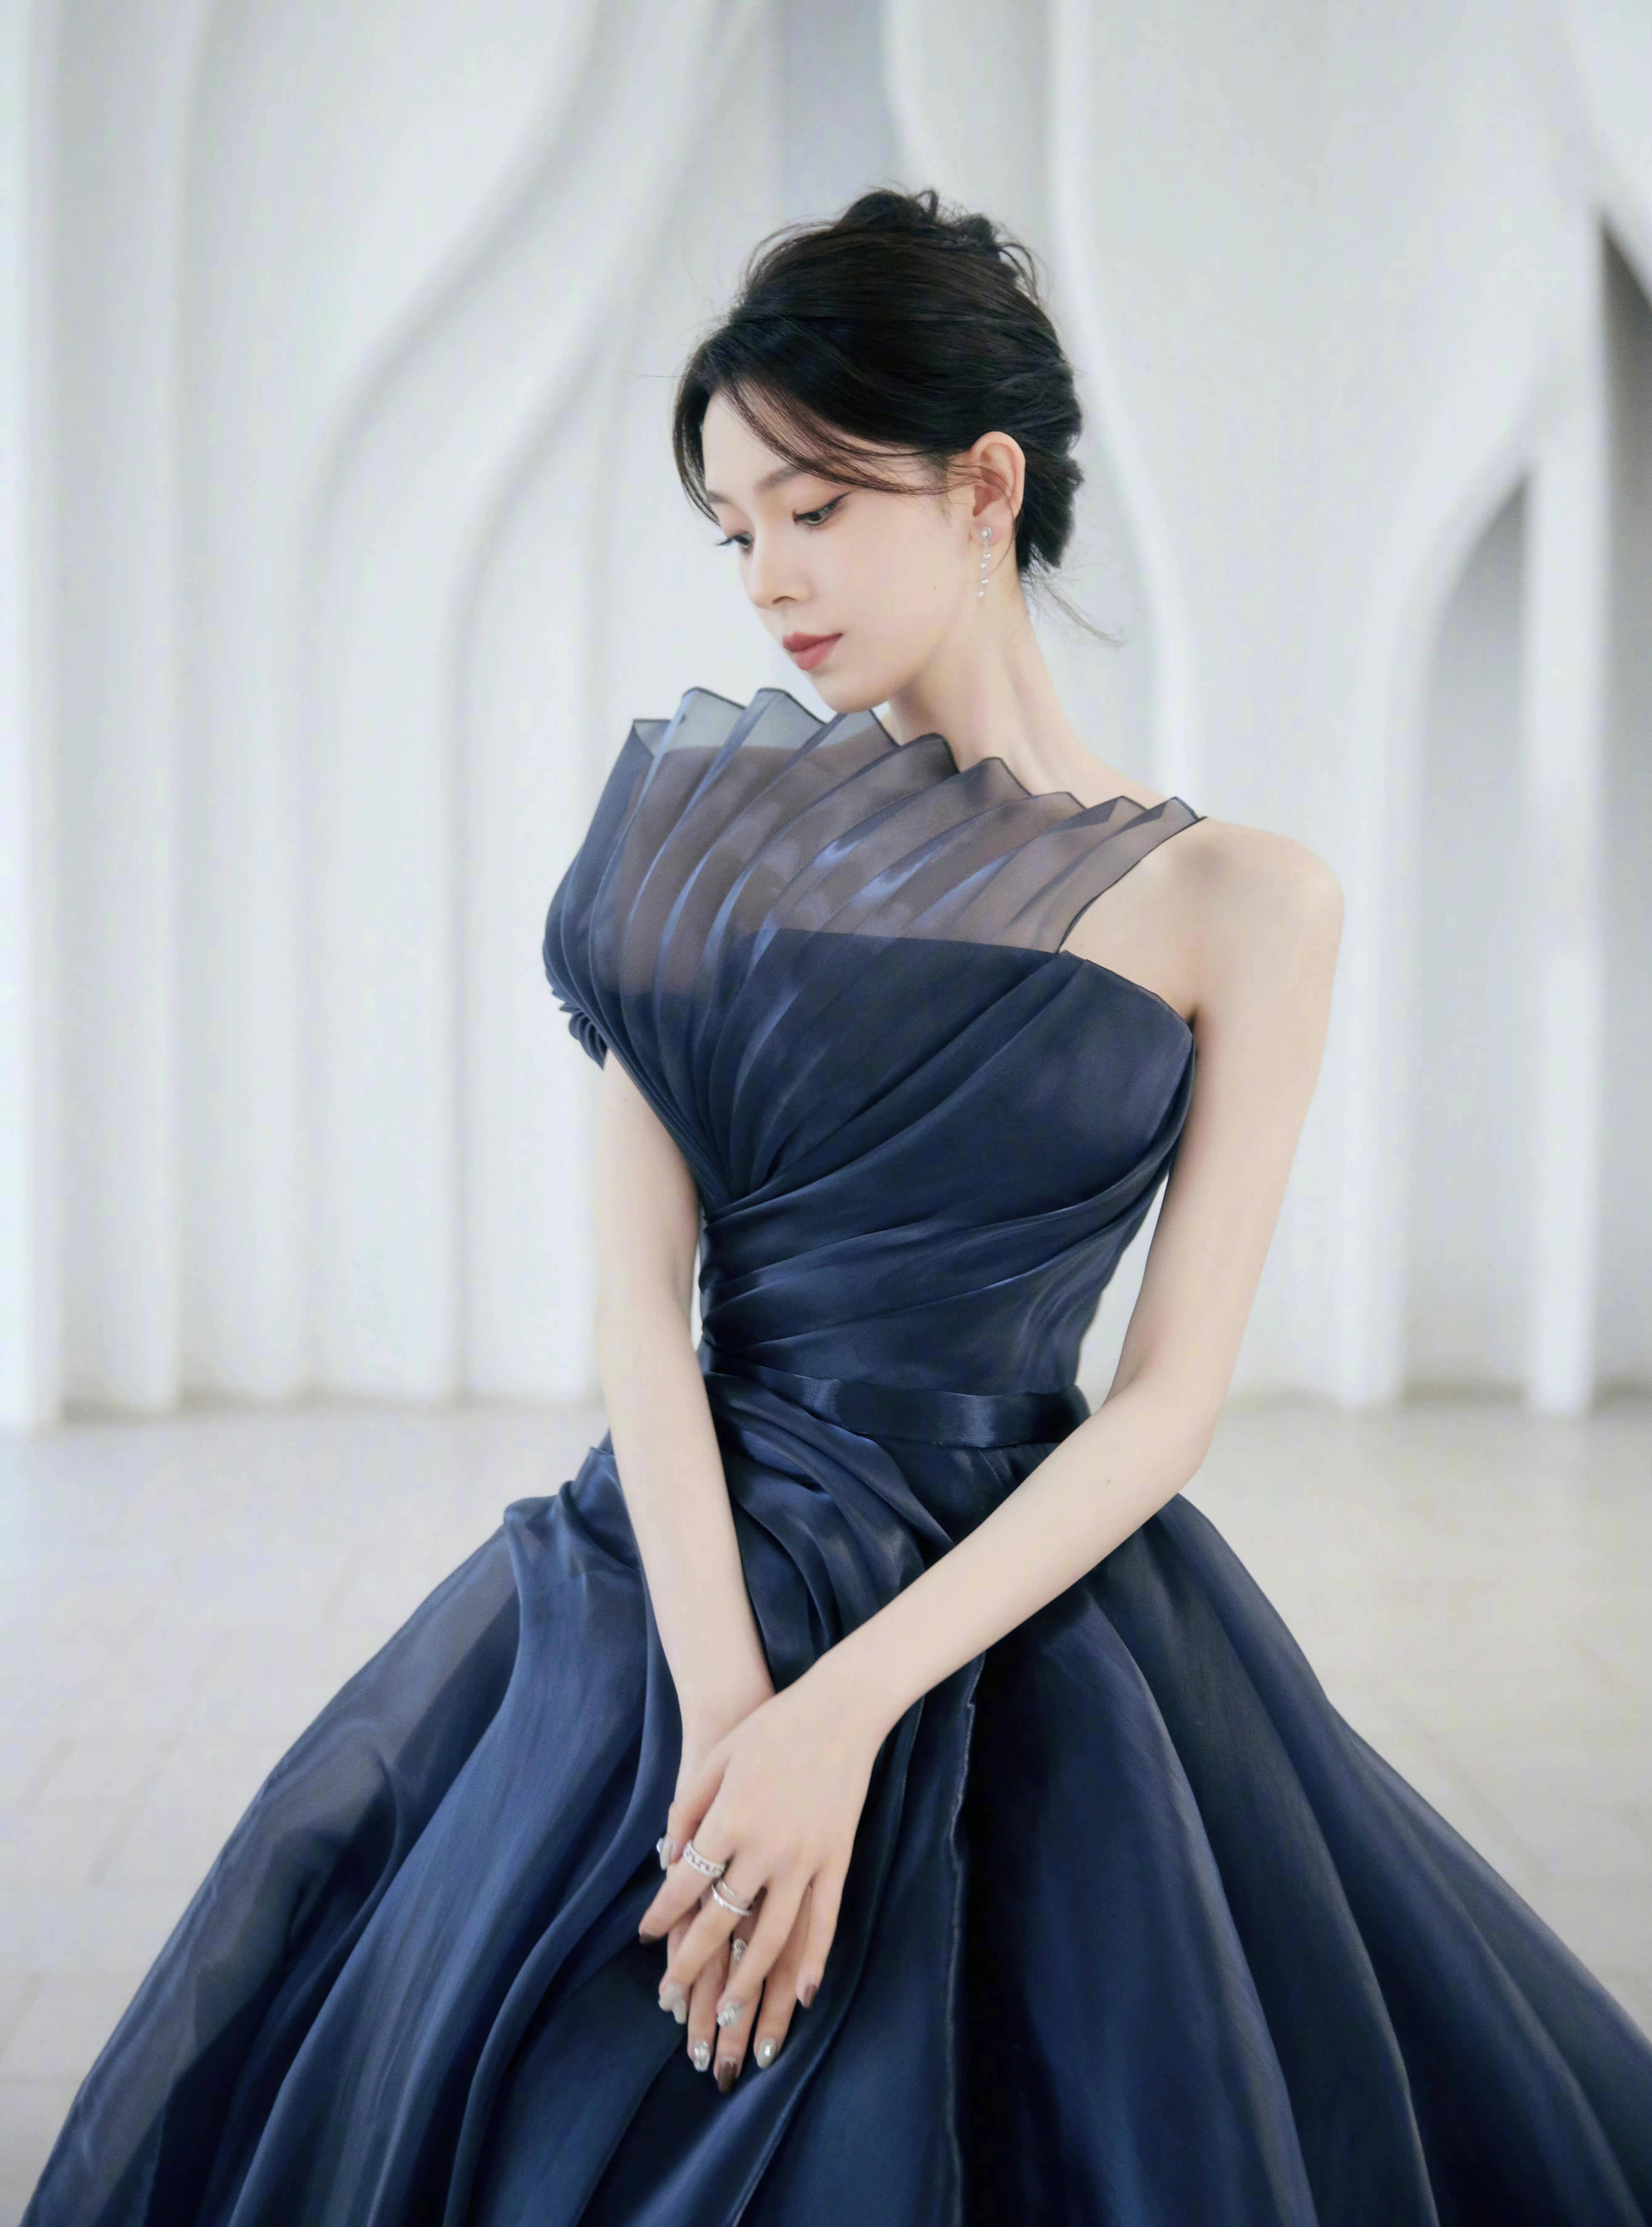 陈瑶藏蓝色抹胸礼服裙造型好仙,天鹅颈好优美,整个人在发光